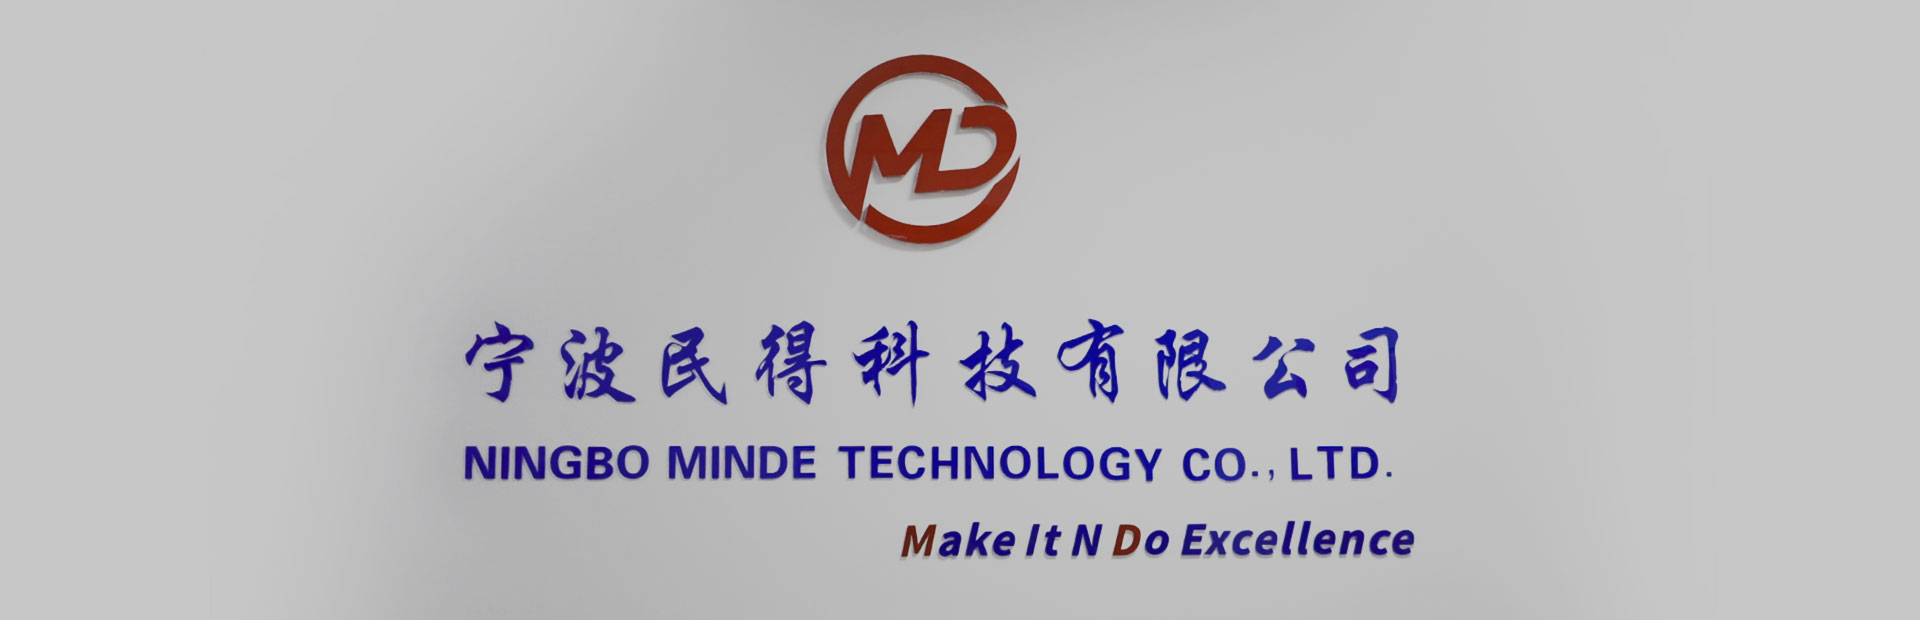 Ningbo Minde Technology Co., Ltd.